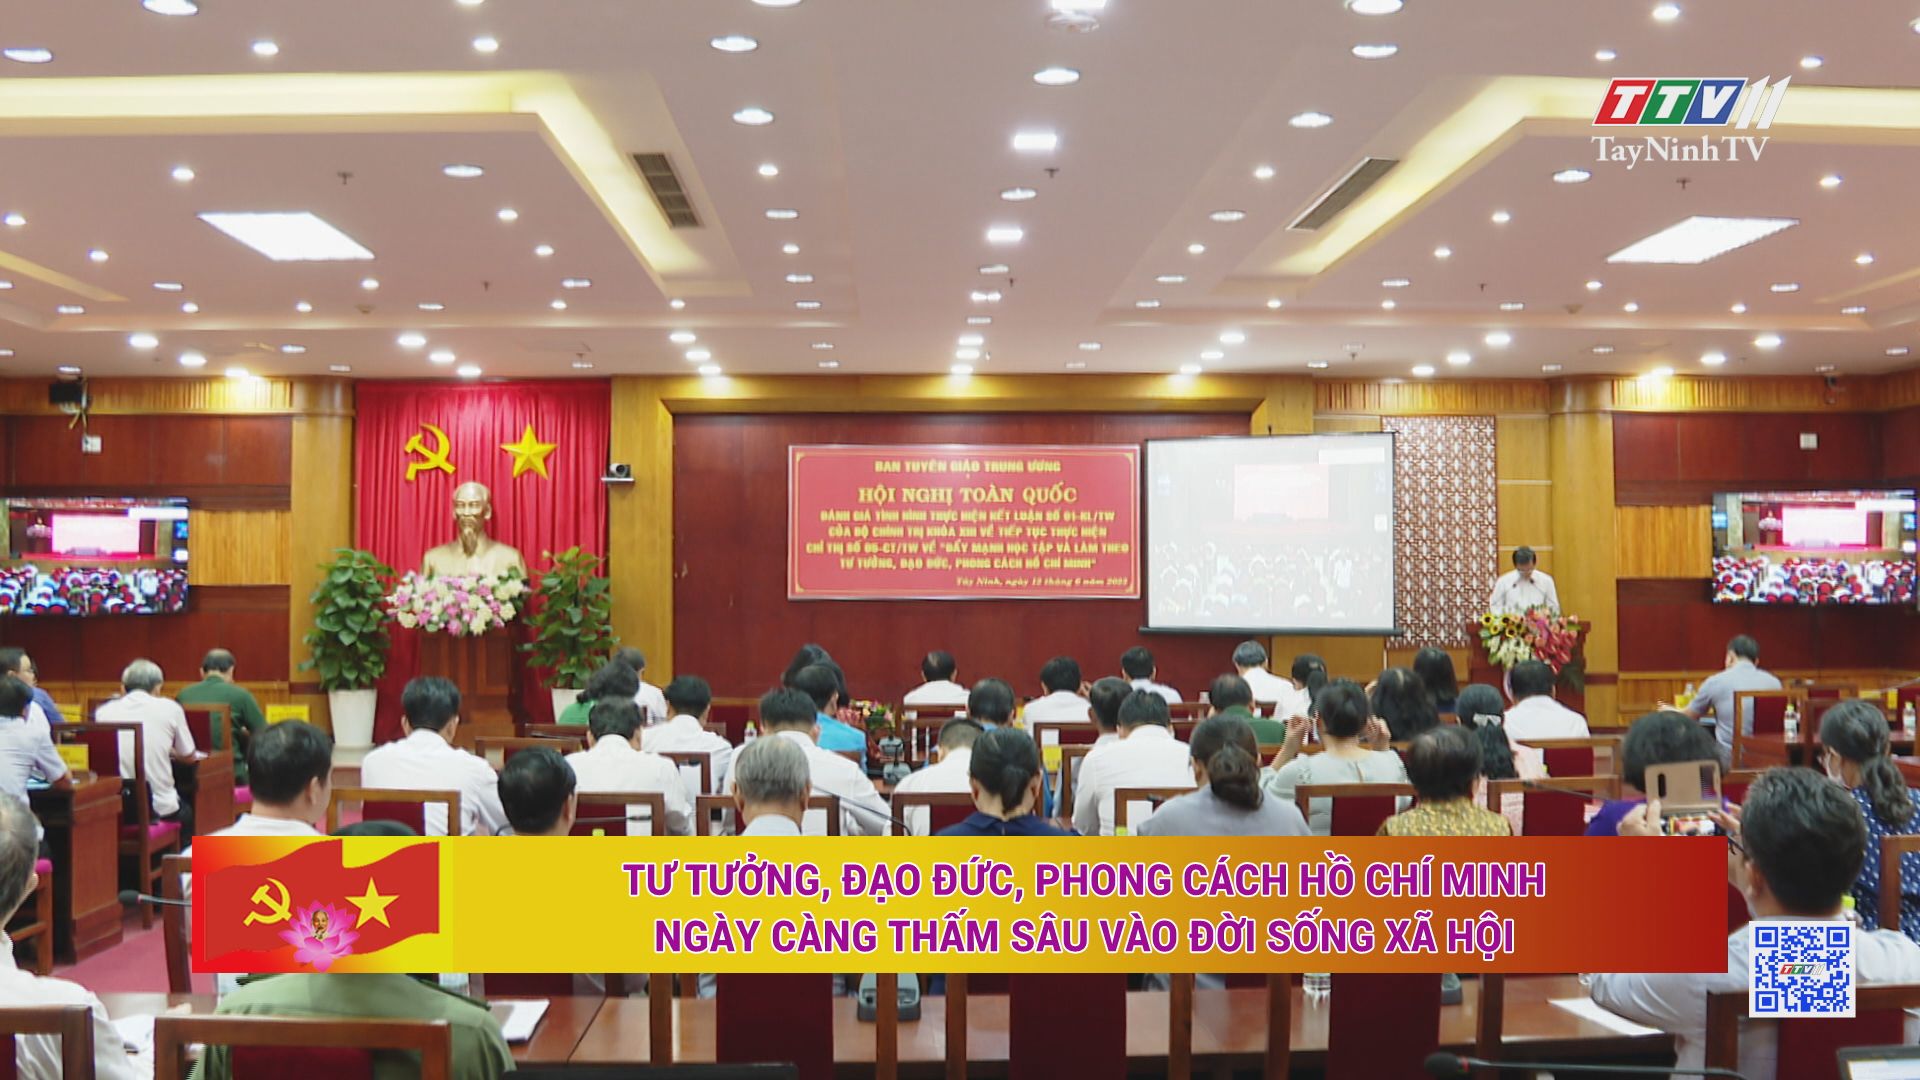 Tư tưởng, đạo đức, phong cách Hồ Chí Minh ngày càng thấm sâu vào đời sống xã hội | TayNinhTV